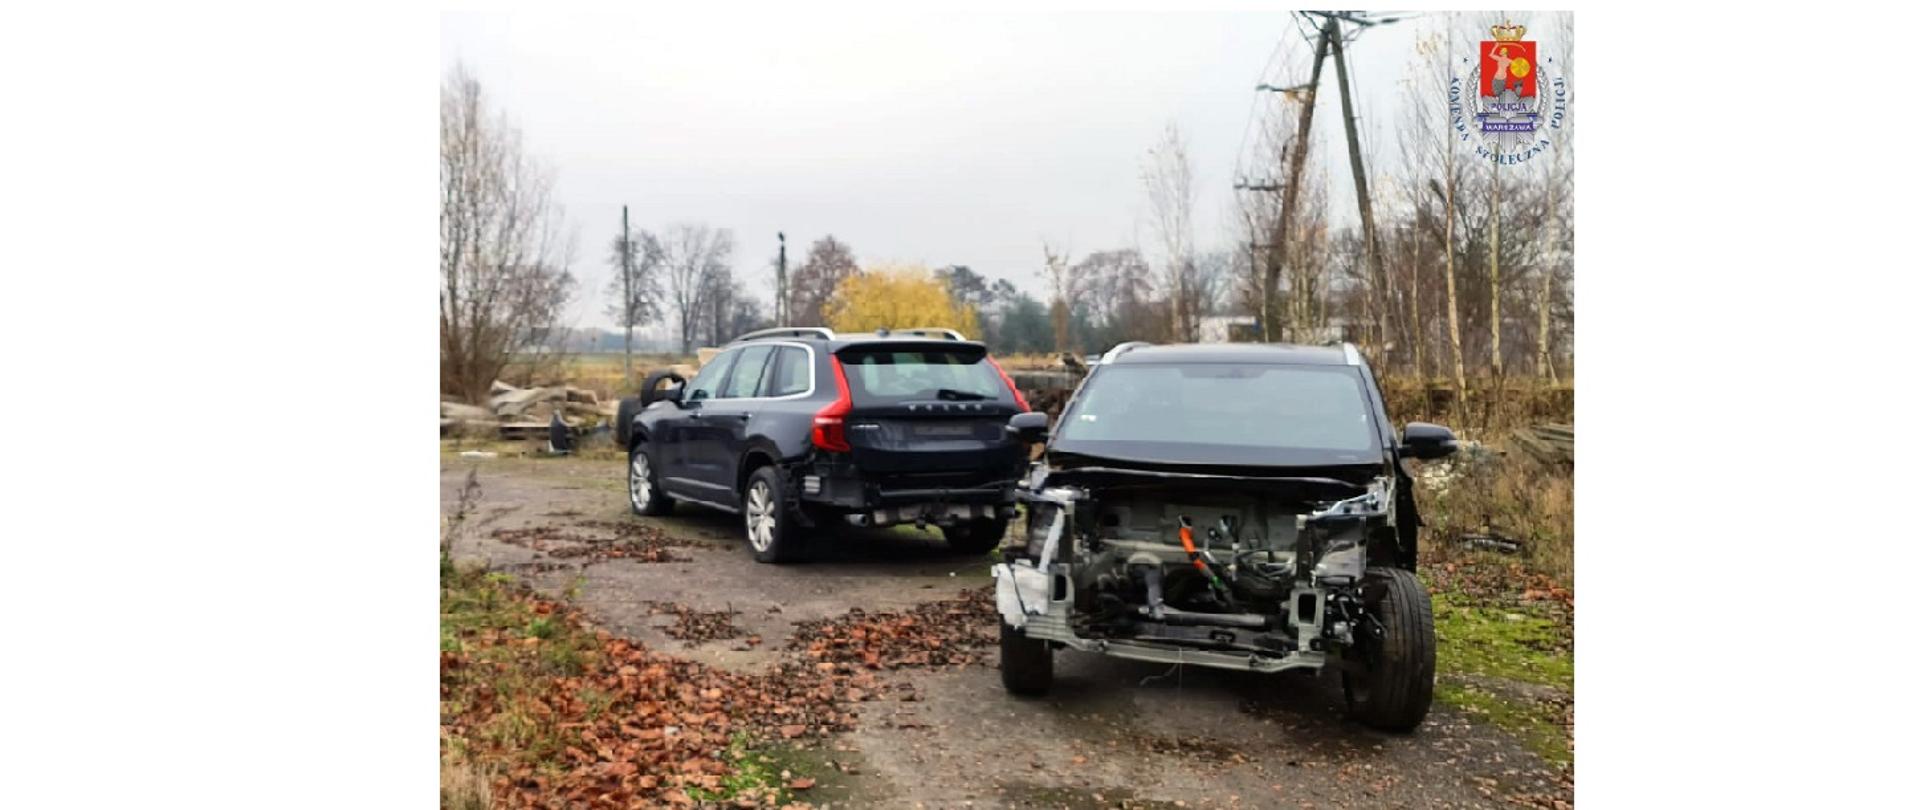 Uderzenie Wielkopolskiego pionu PZ PK w zorganizowaną grupę przestępczą zajmującą się kradzieżami samochodów
